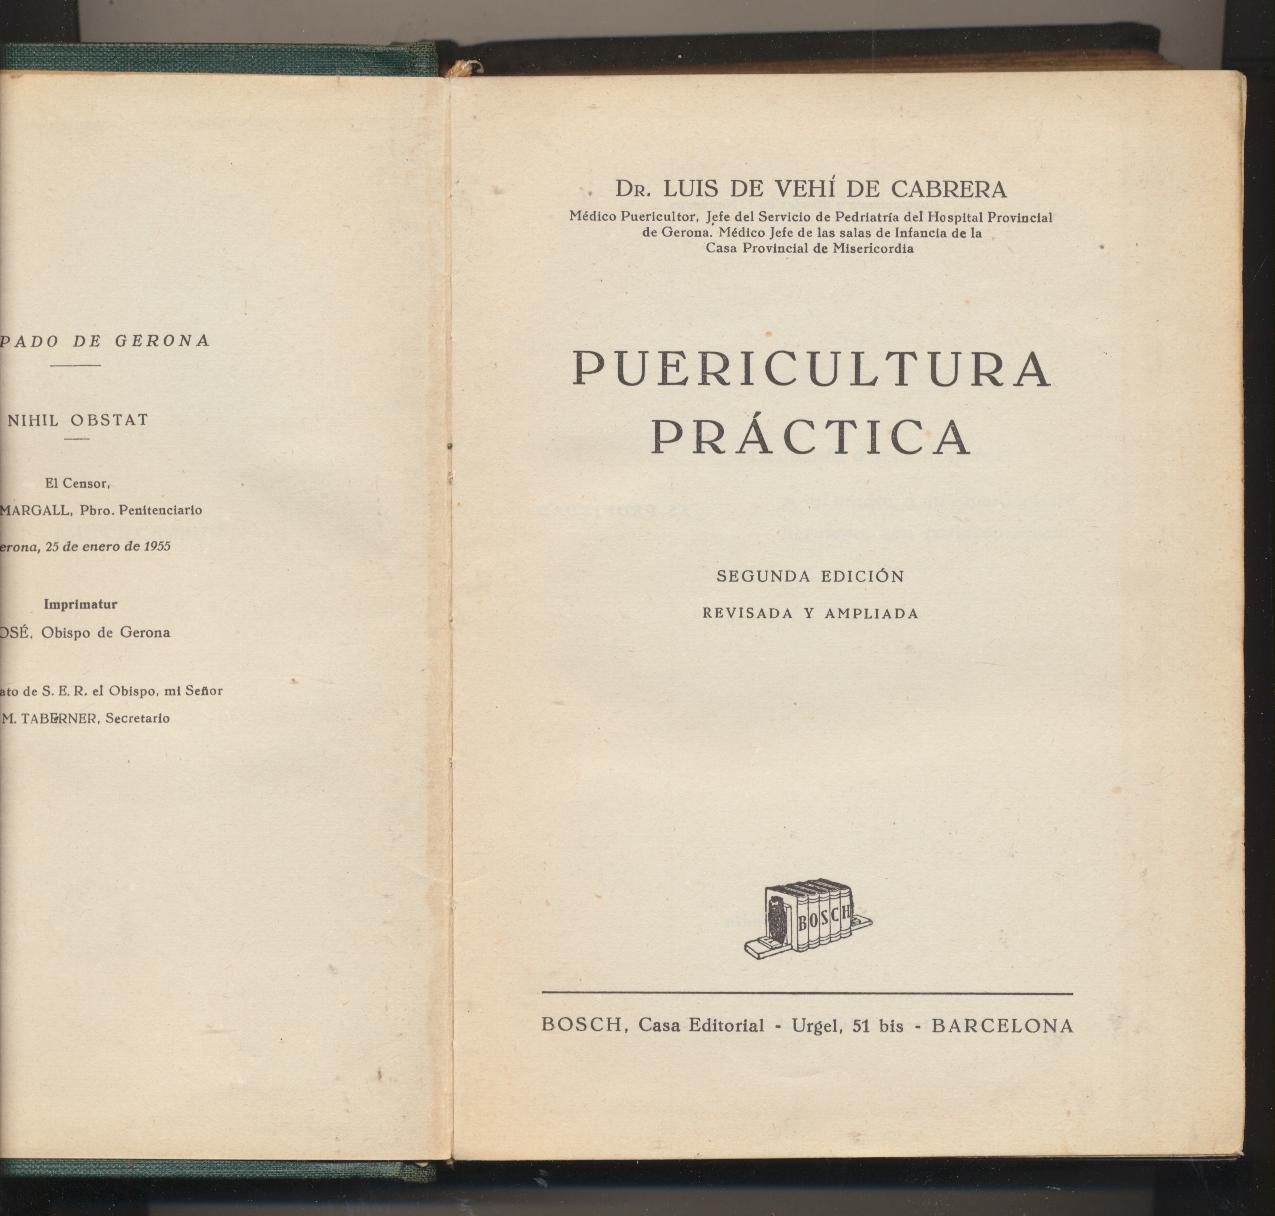 Dr. Luis de Vehí de Cabrera. Puericultura Práctica. 2ª Edición 1955